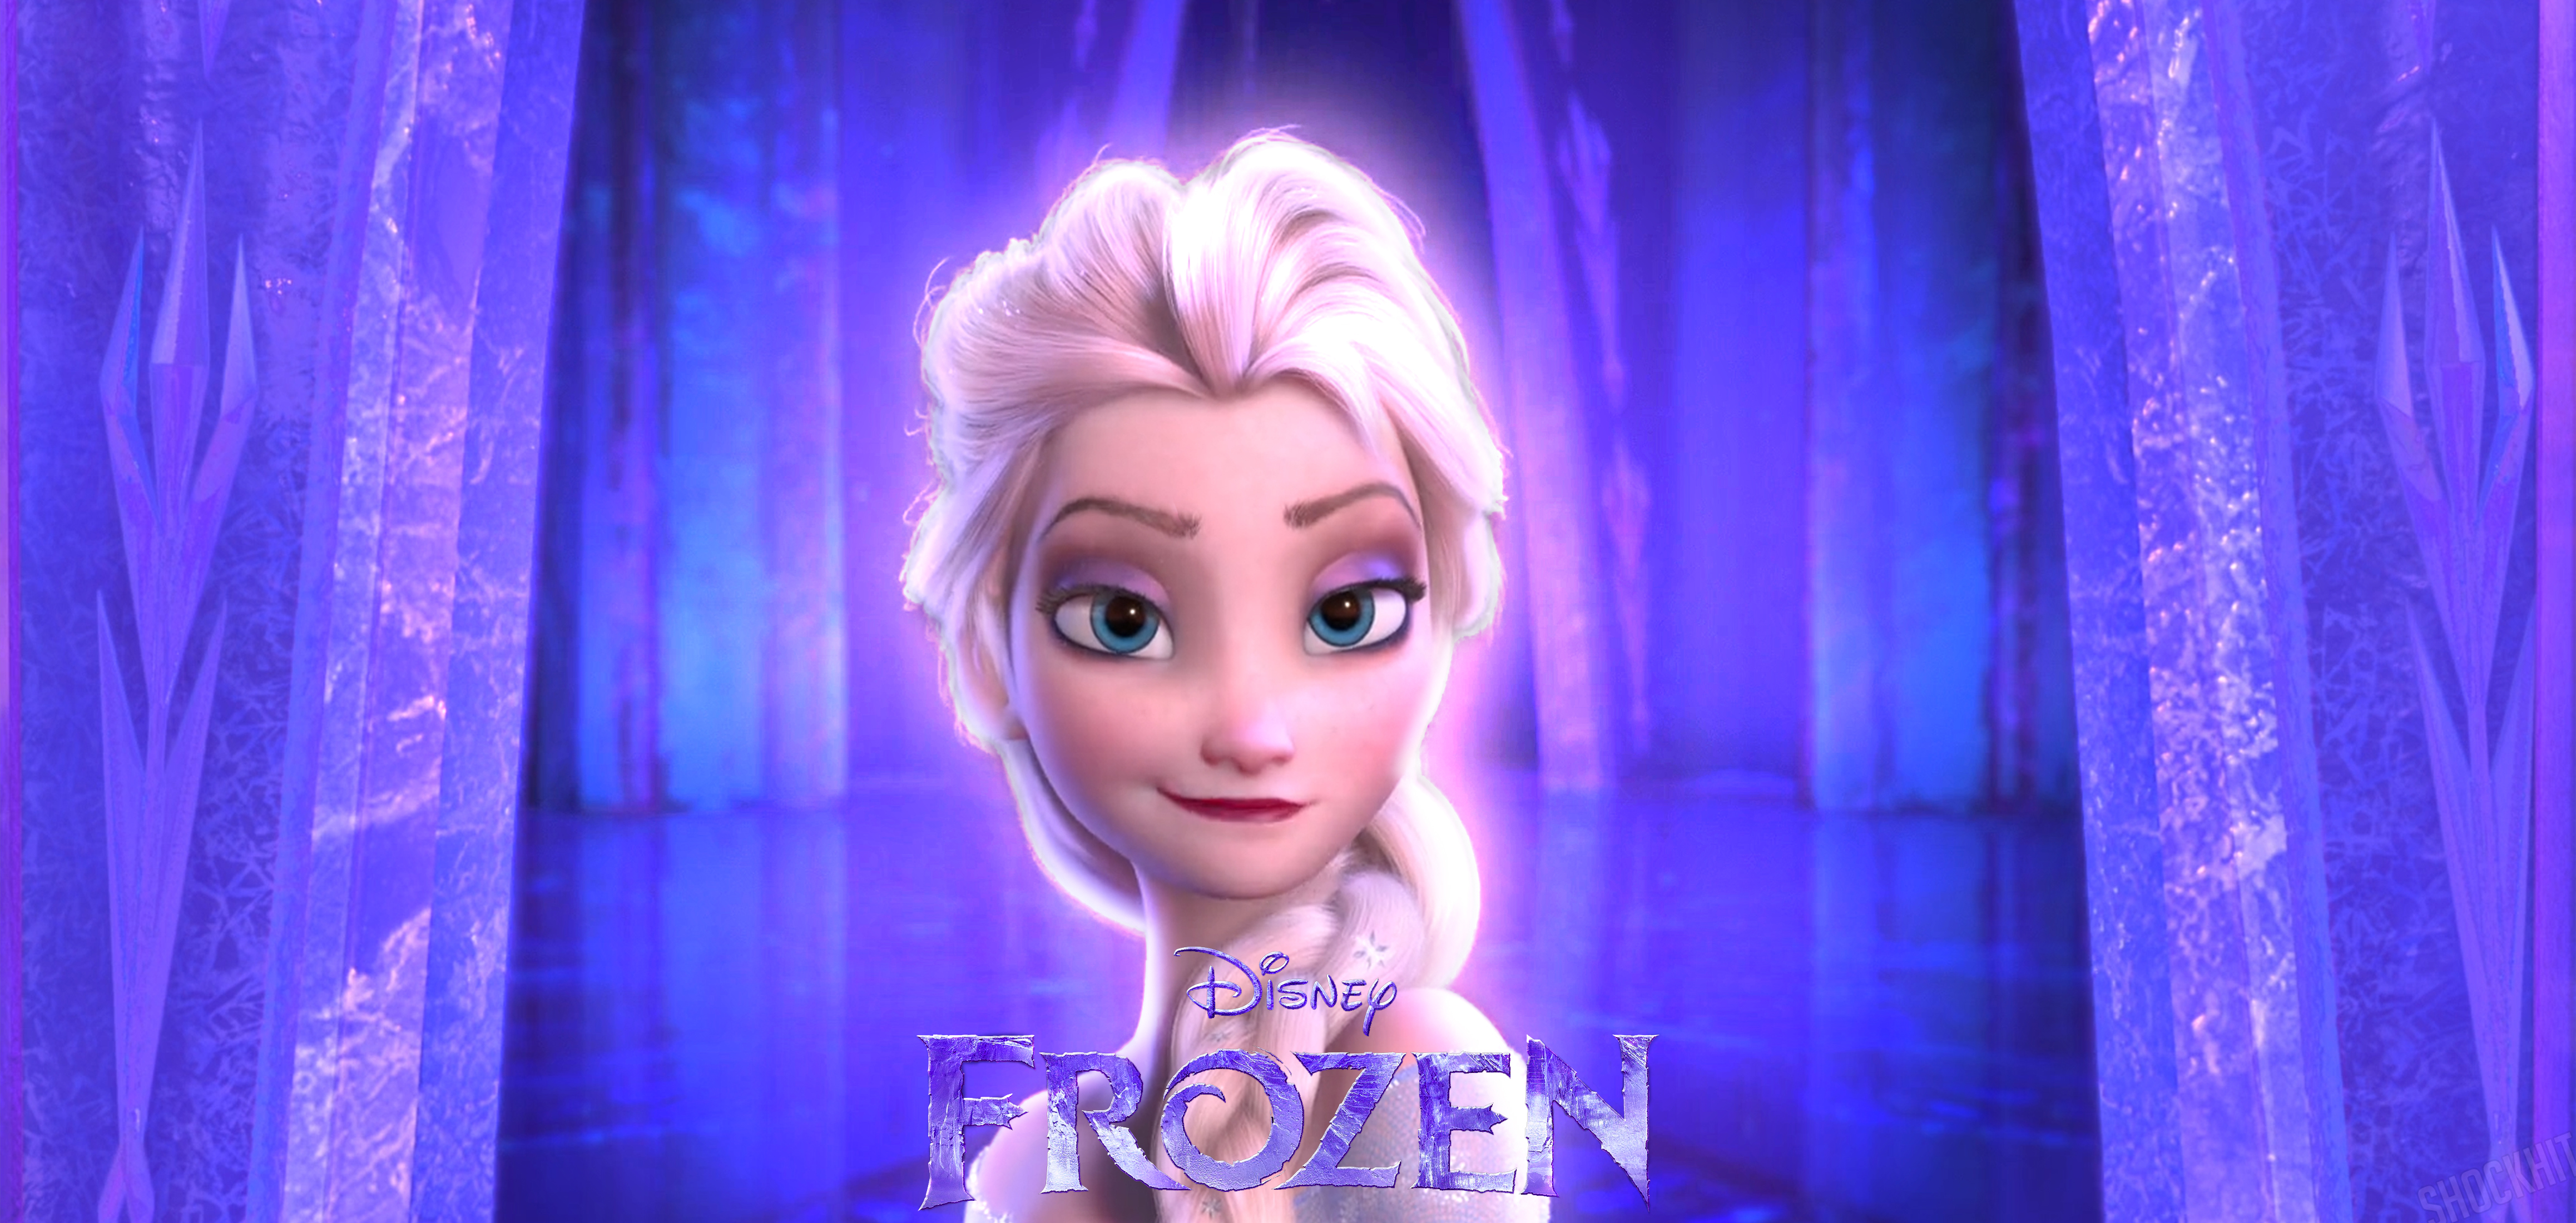 Queen Elsa (Frozen) by ShockHit on DeviantArt